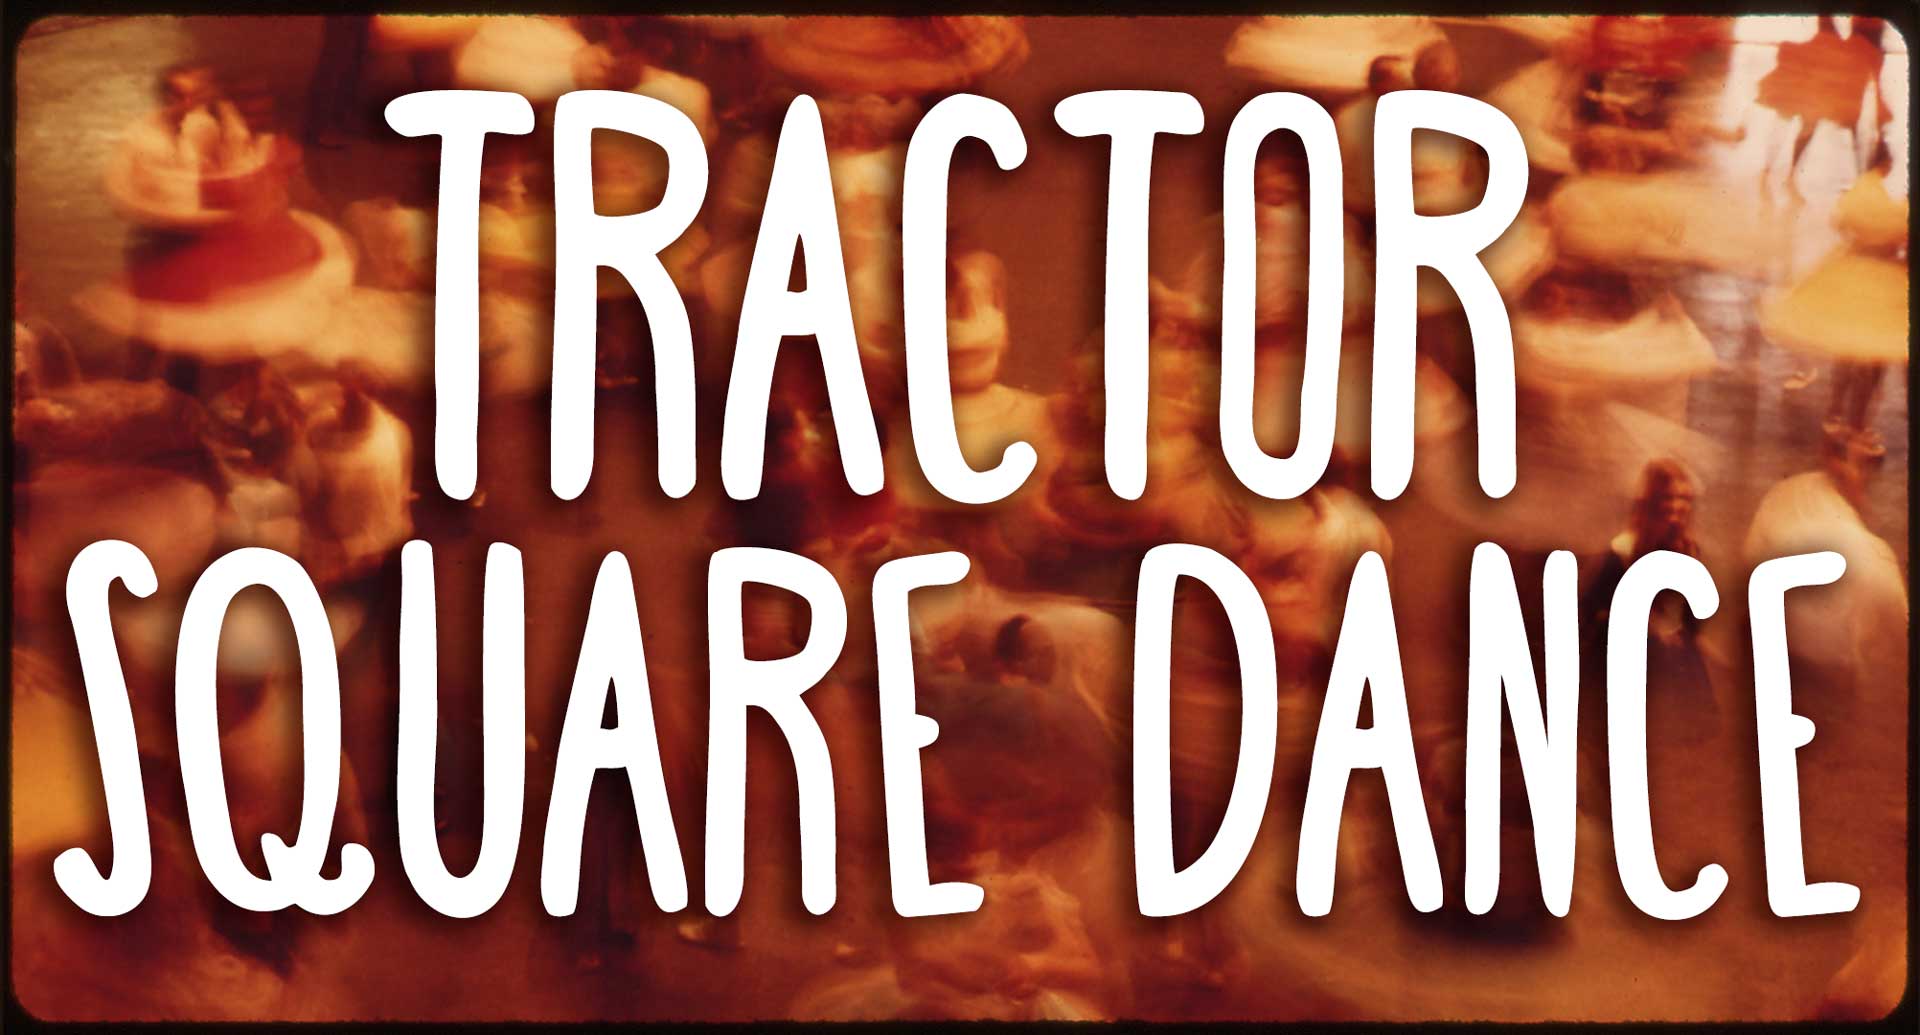 Tractor Square Dance